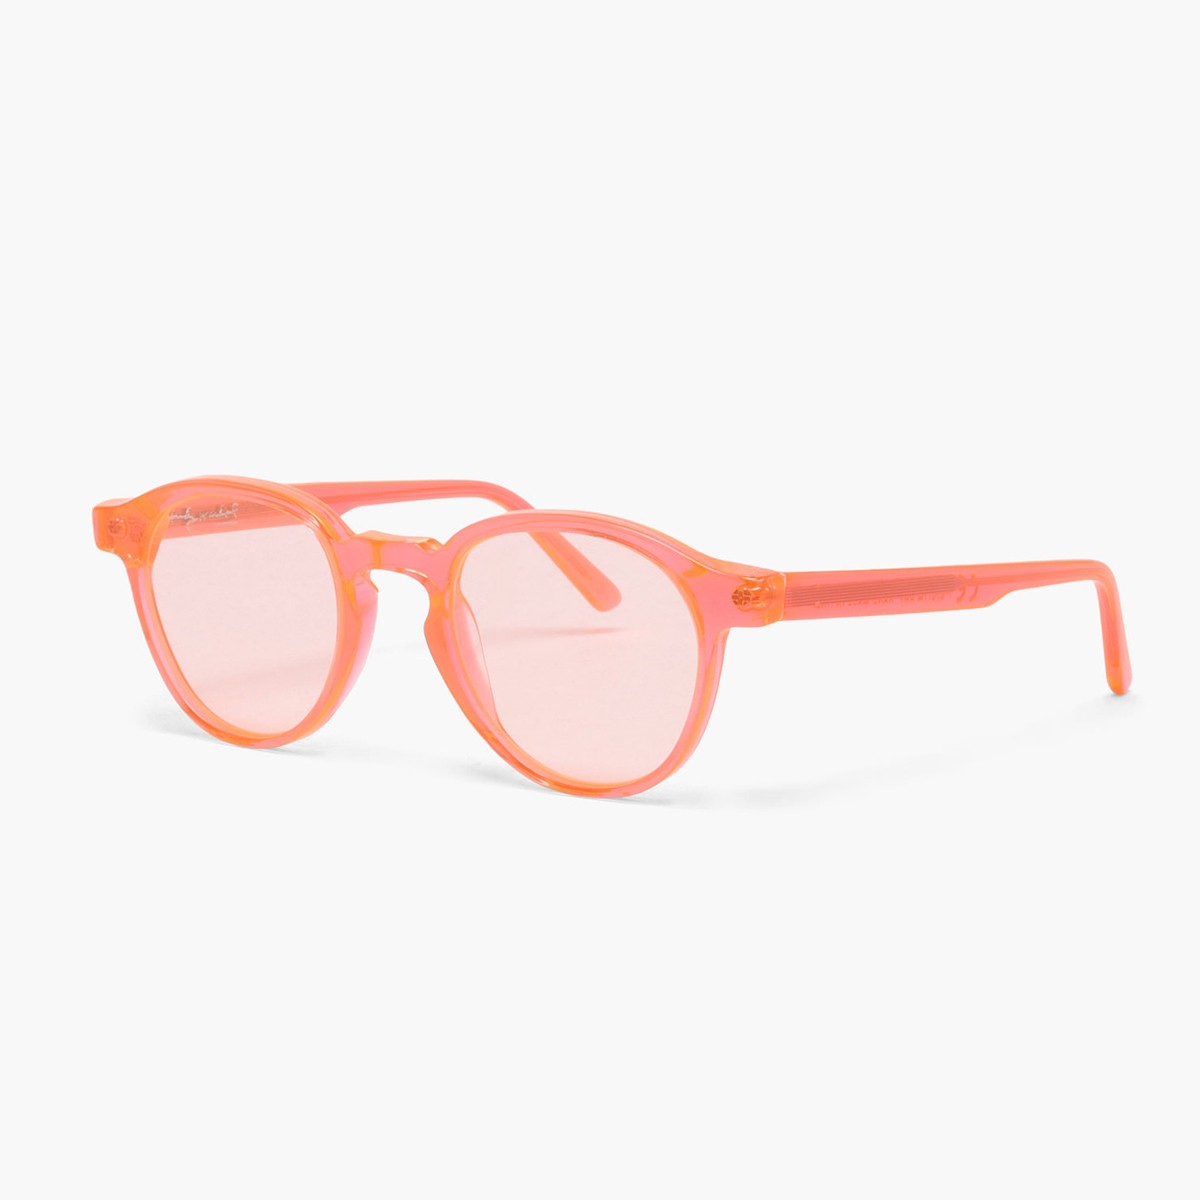 Super The Iconic | Unisex sunglasses